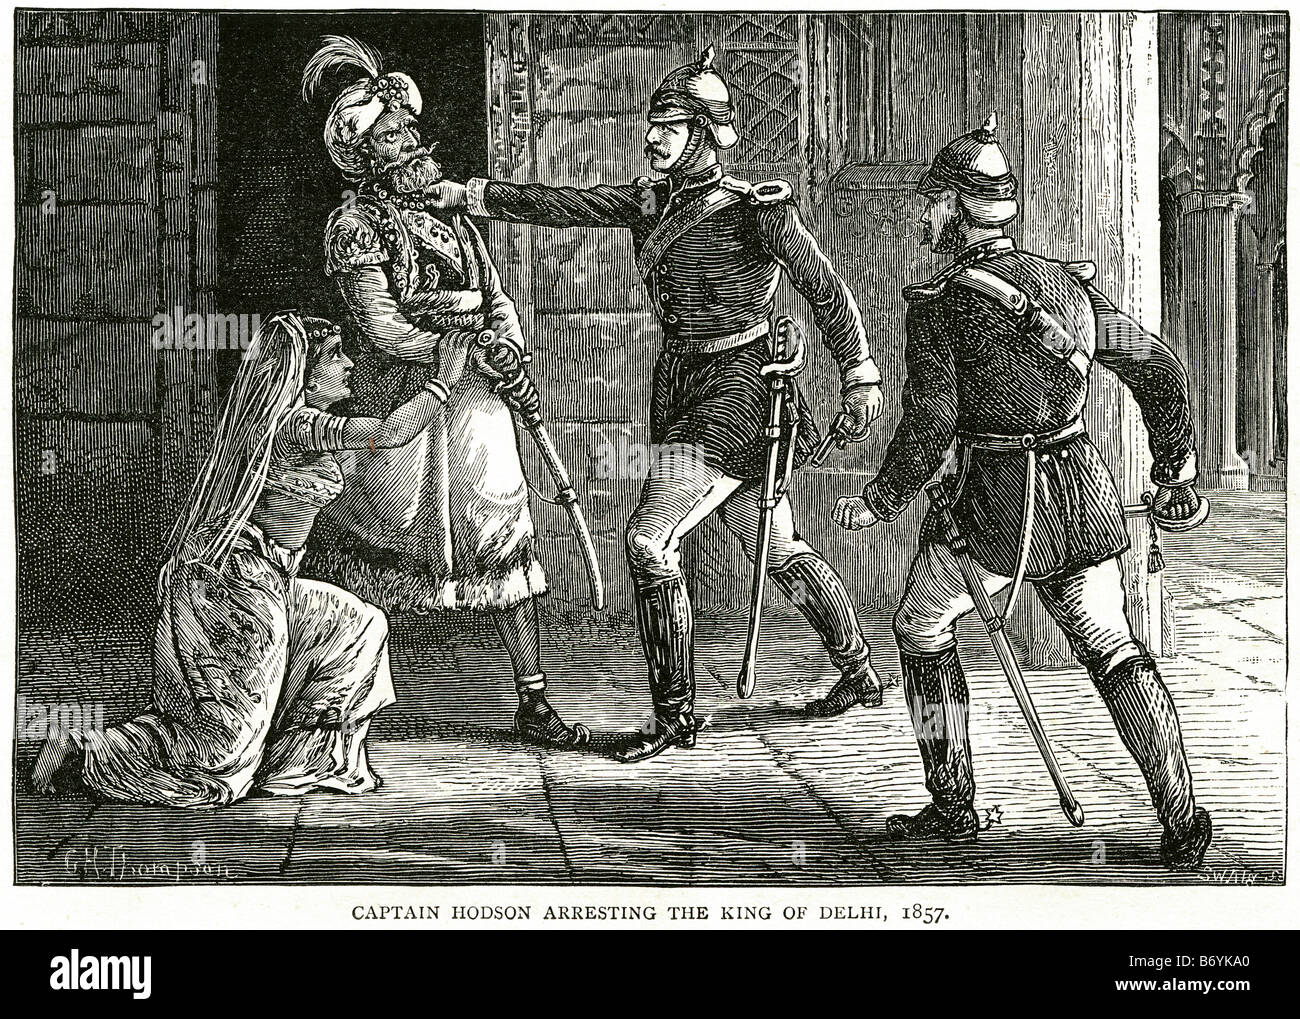 captain hodson arresting king Delhi 1857 raj british soldier arrest law sword uniform official The British were slow to strike b Stock Photo